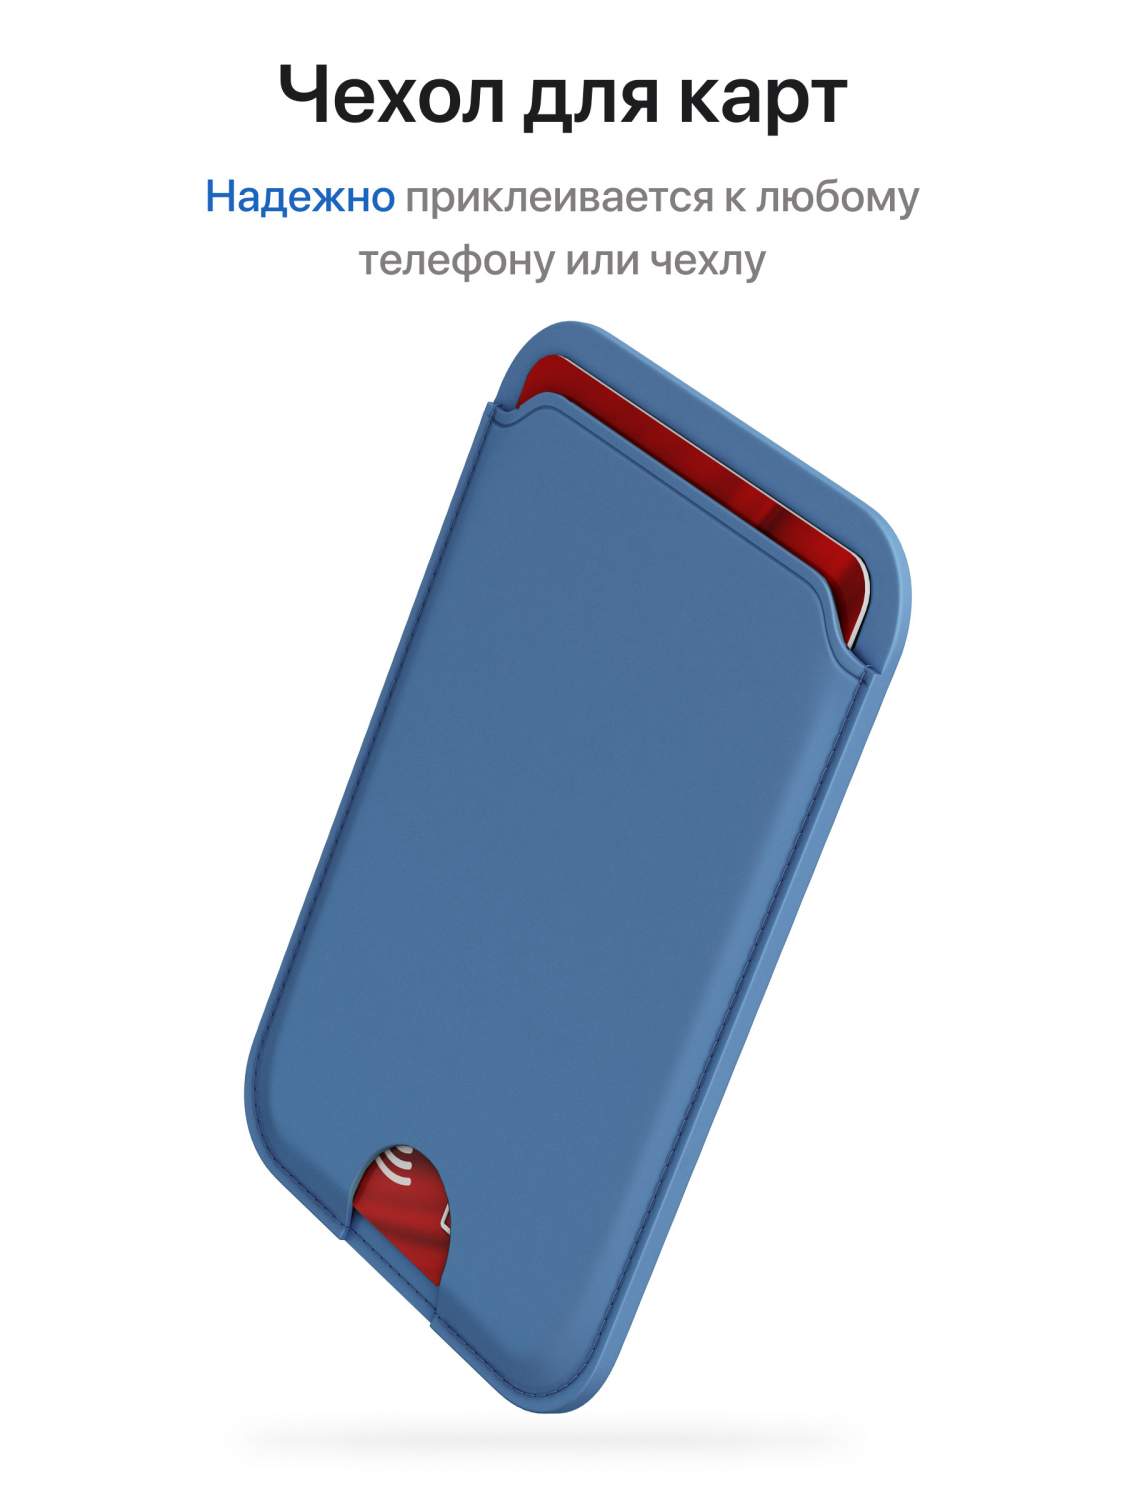 Картхолдер для смартфона универсальный голубой, купить в Москве, цены в  интернет-магазинах на Мегамаркет